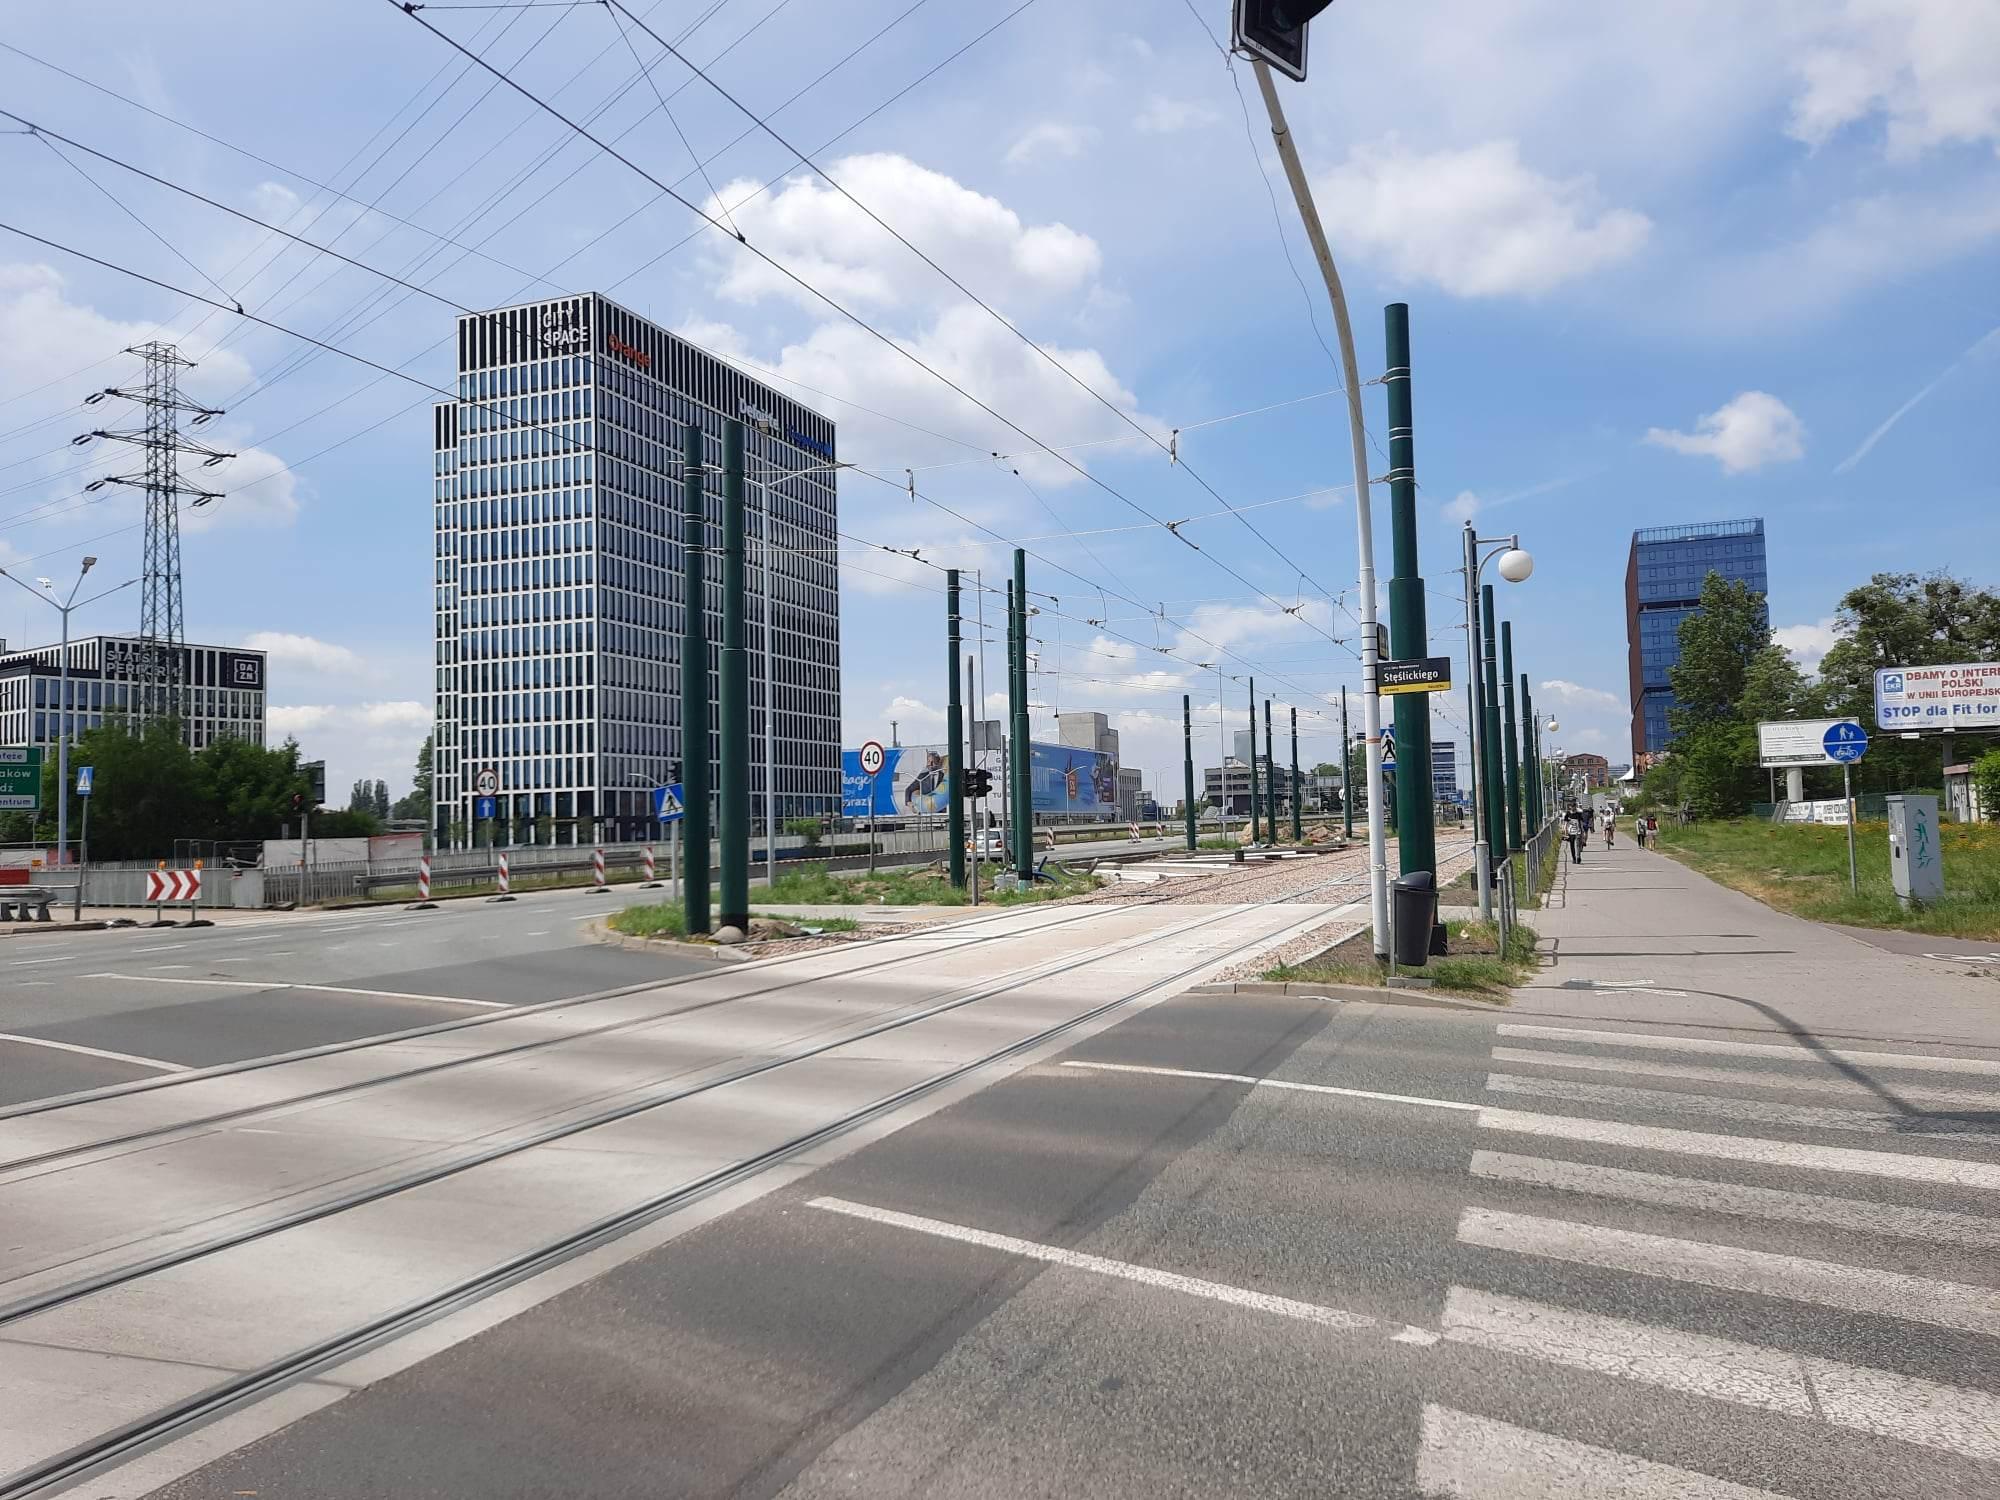 Budowa wiadukt tramwaj chorzowska grundmanna katowice 01